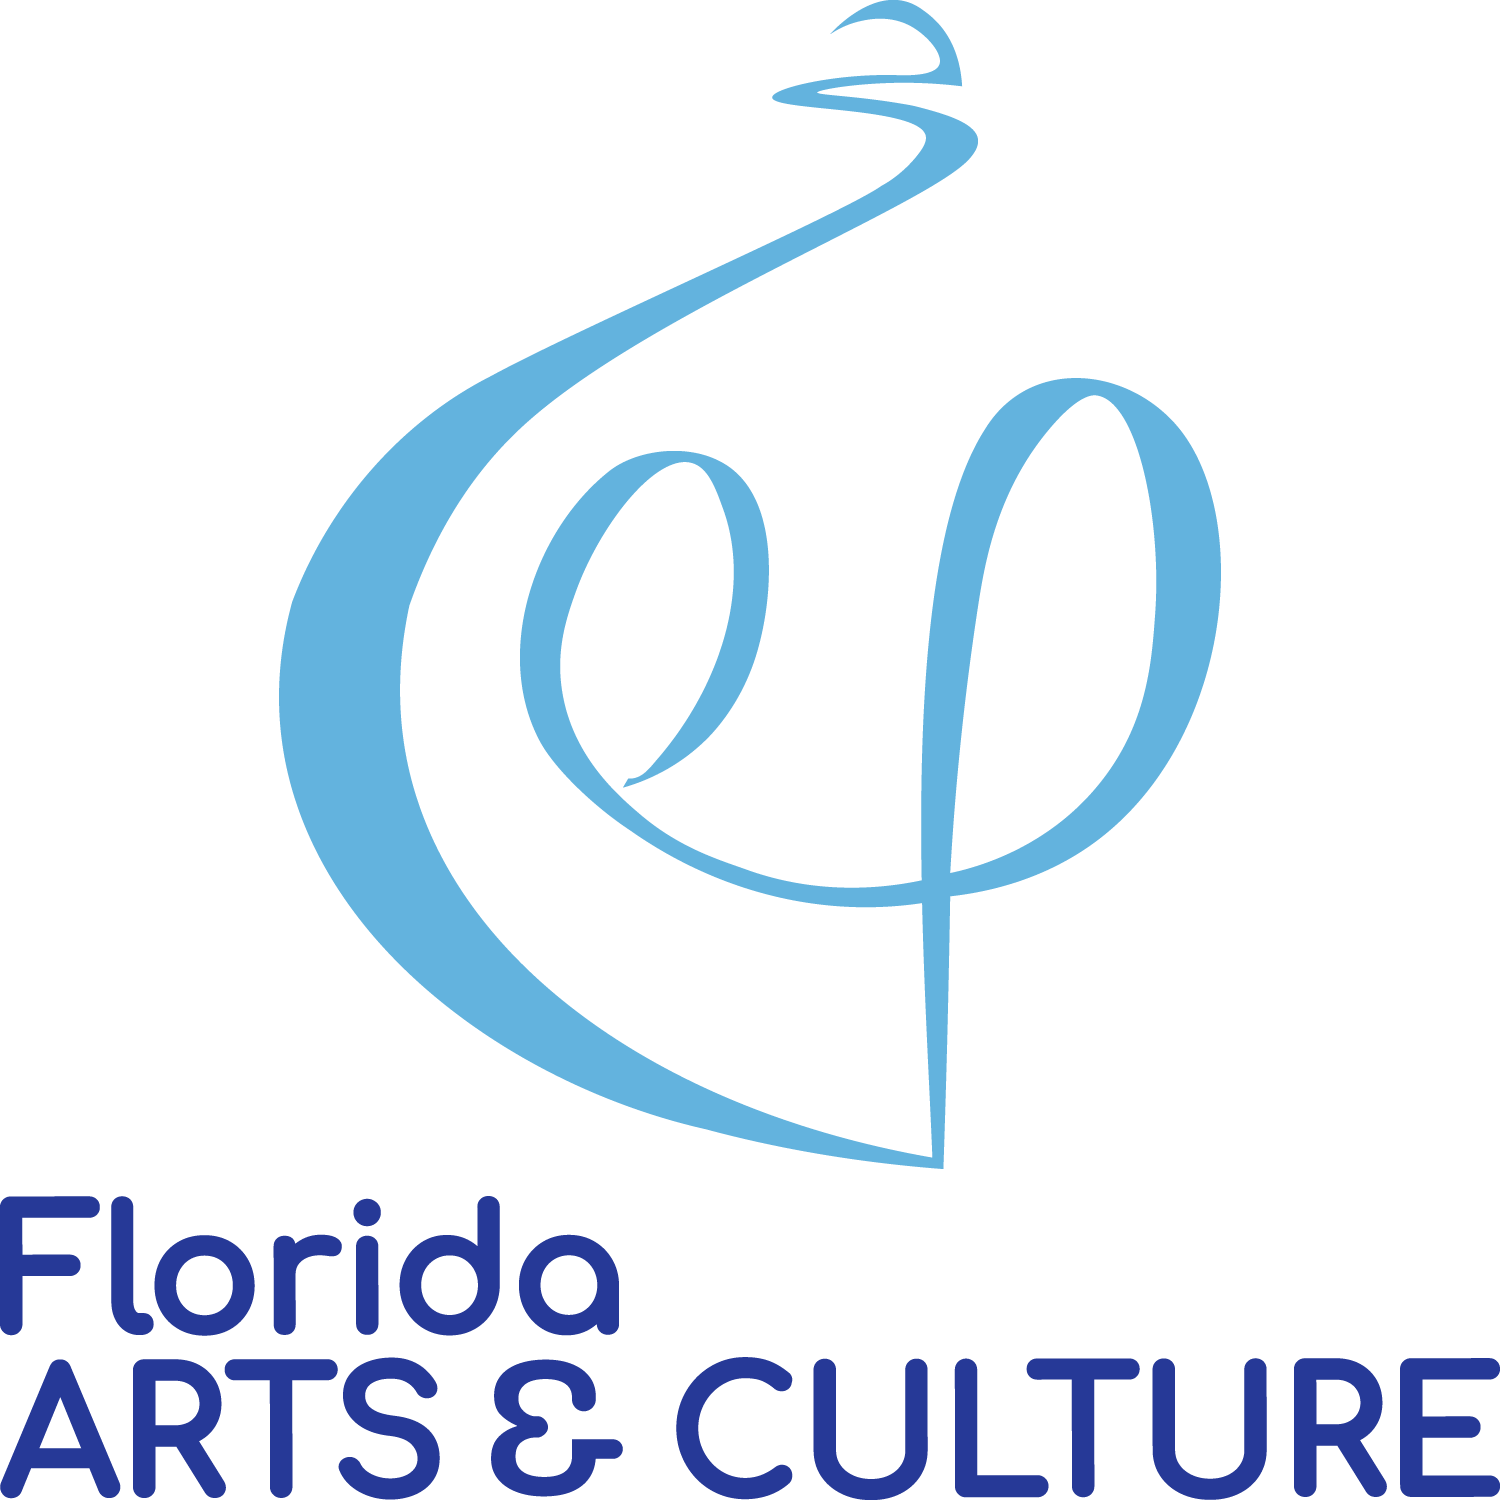 Florida Arts & Culture Logo